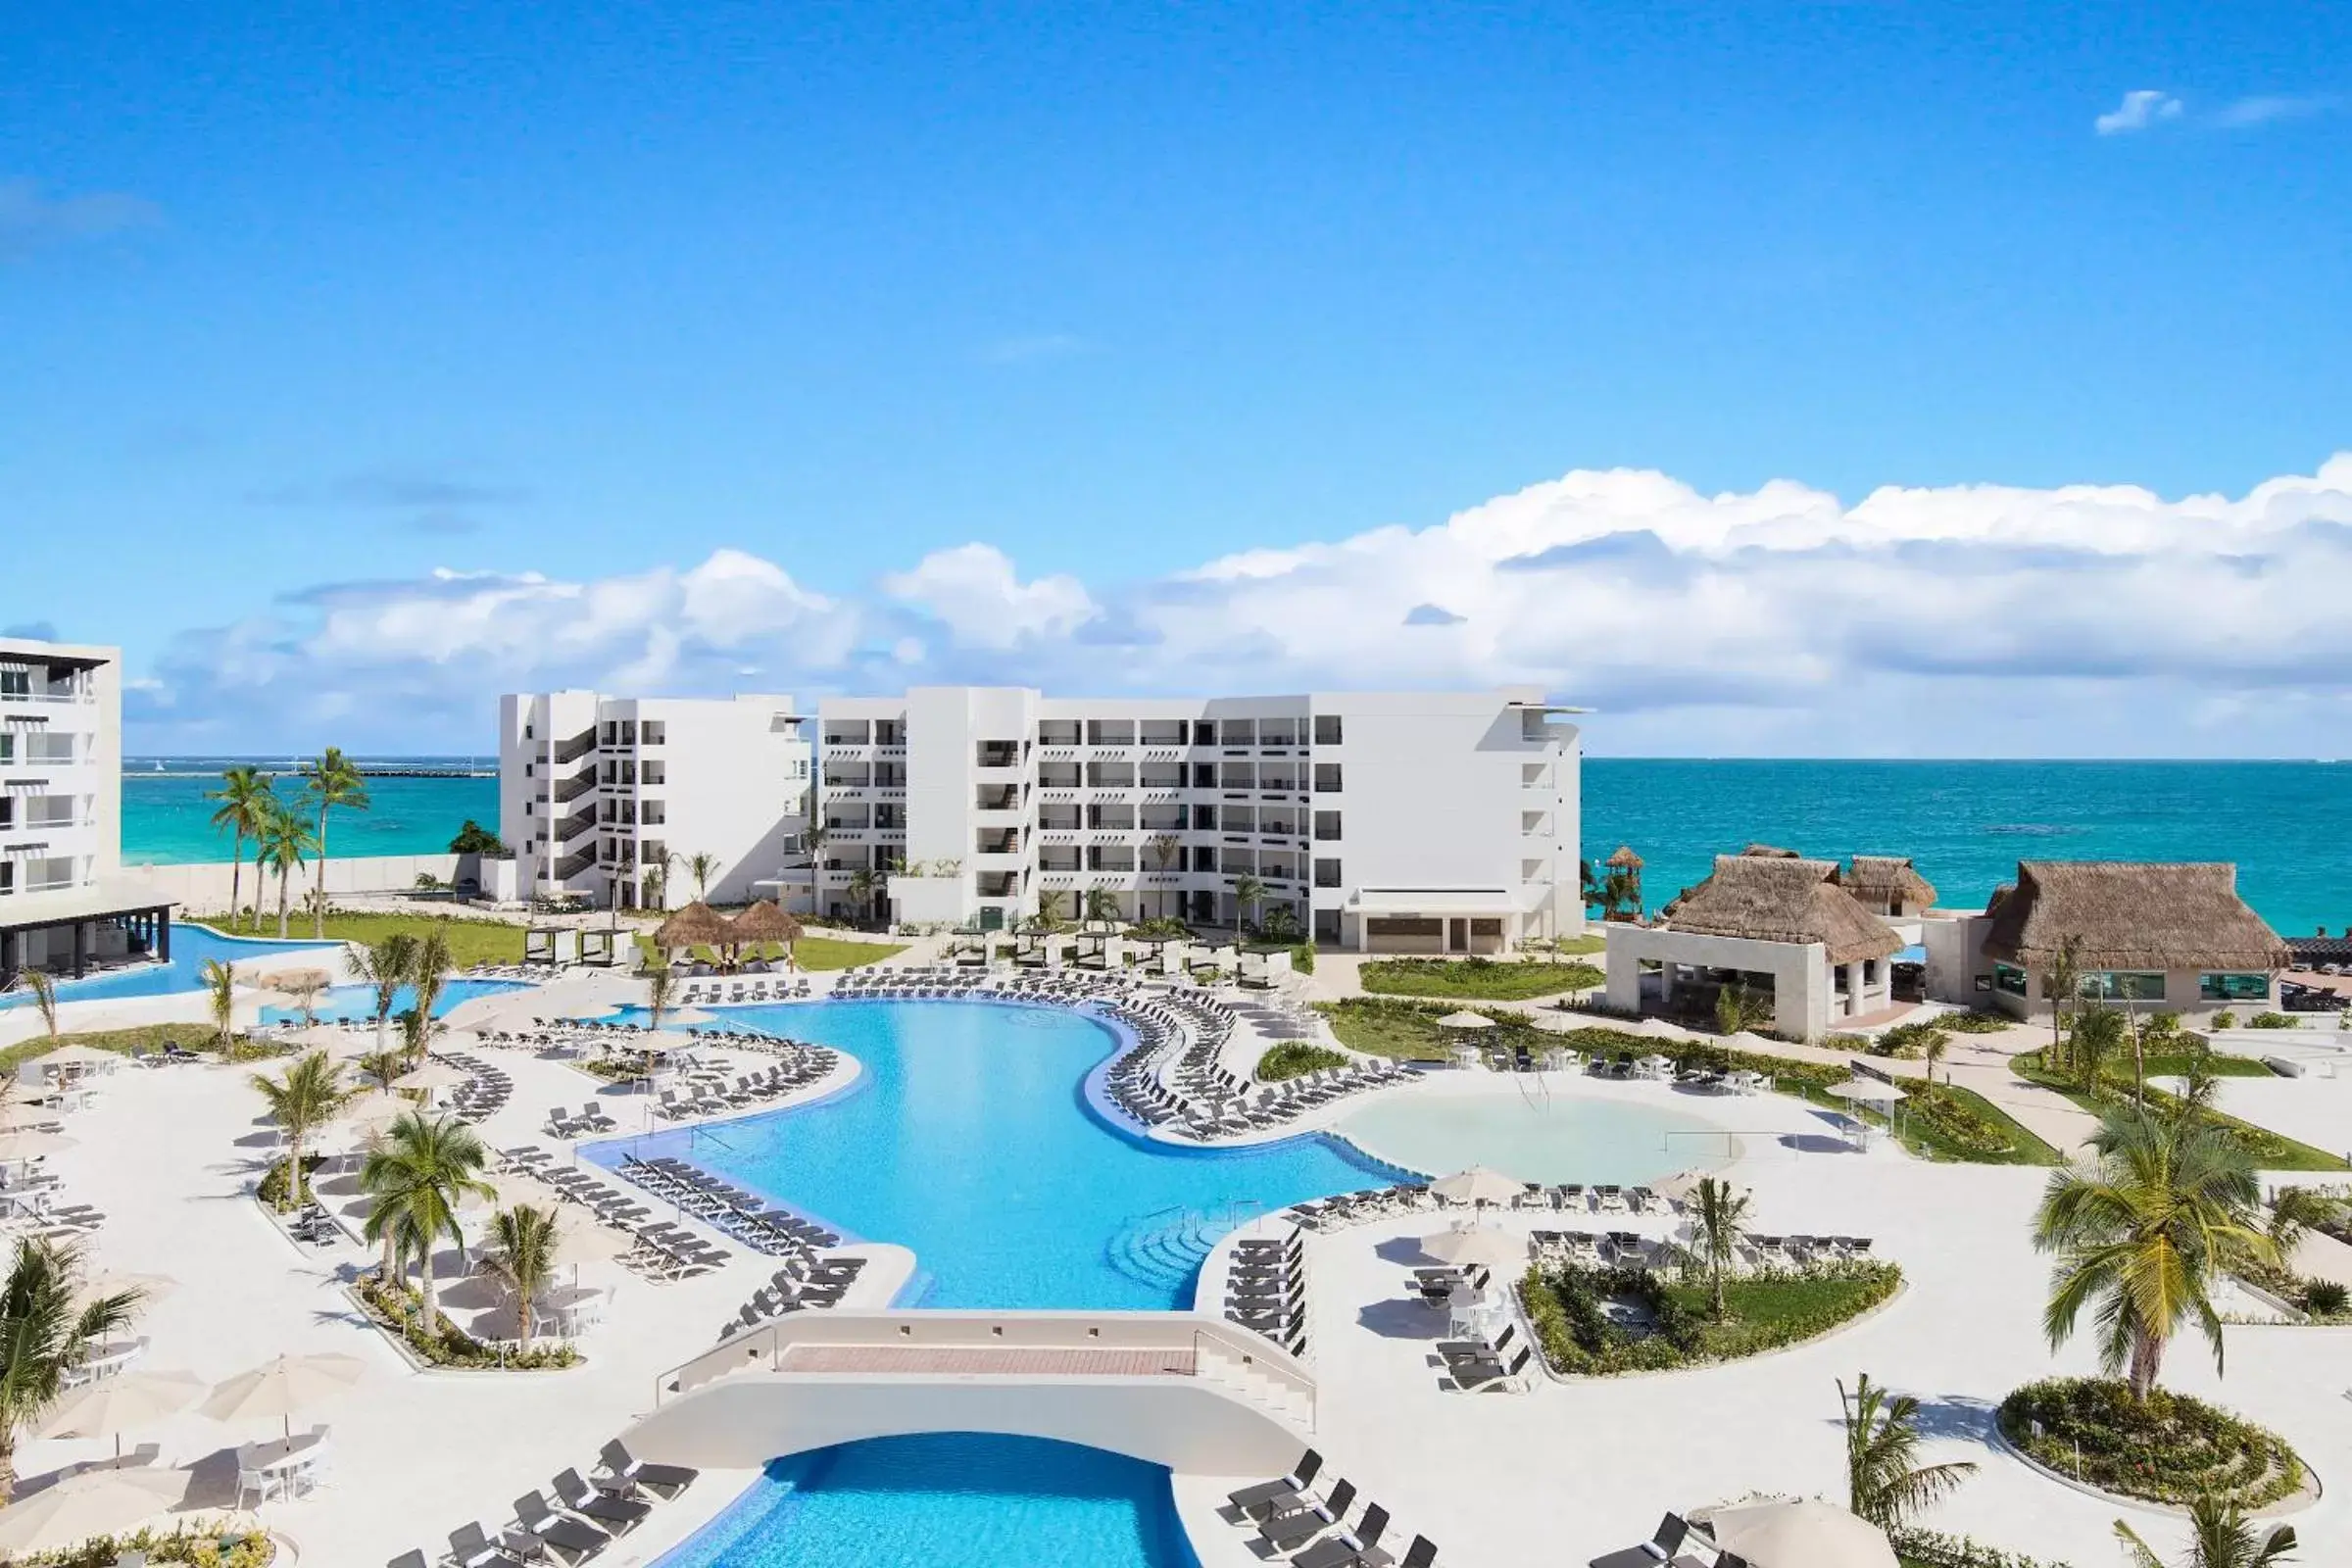 Swimming pool, Pool View in Ventus at Marina El Cid Spa & Beach Resort - All Inclusive